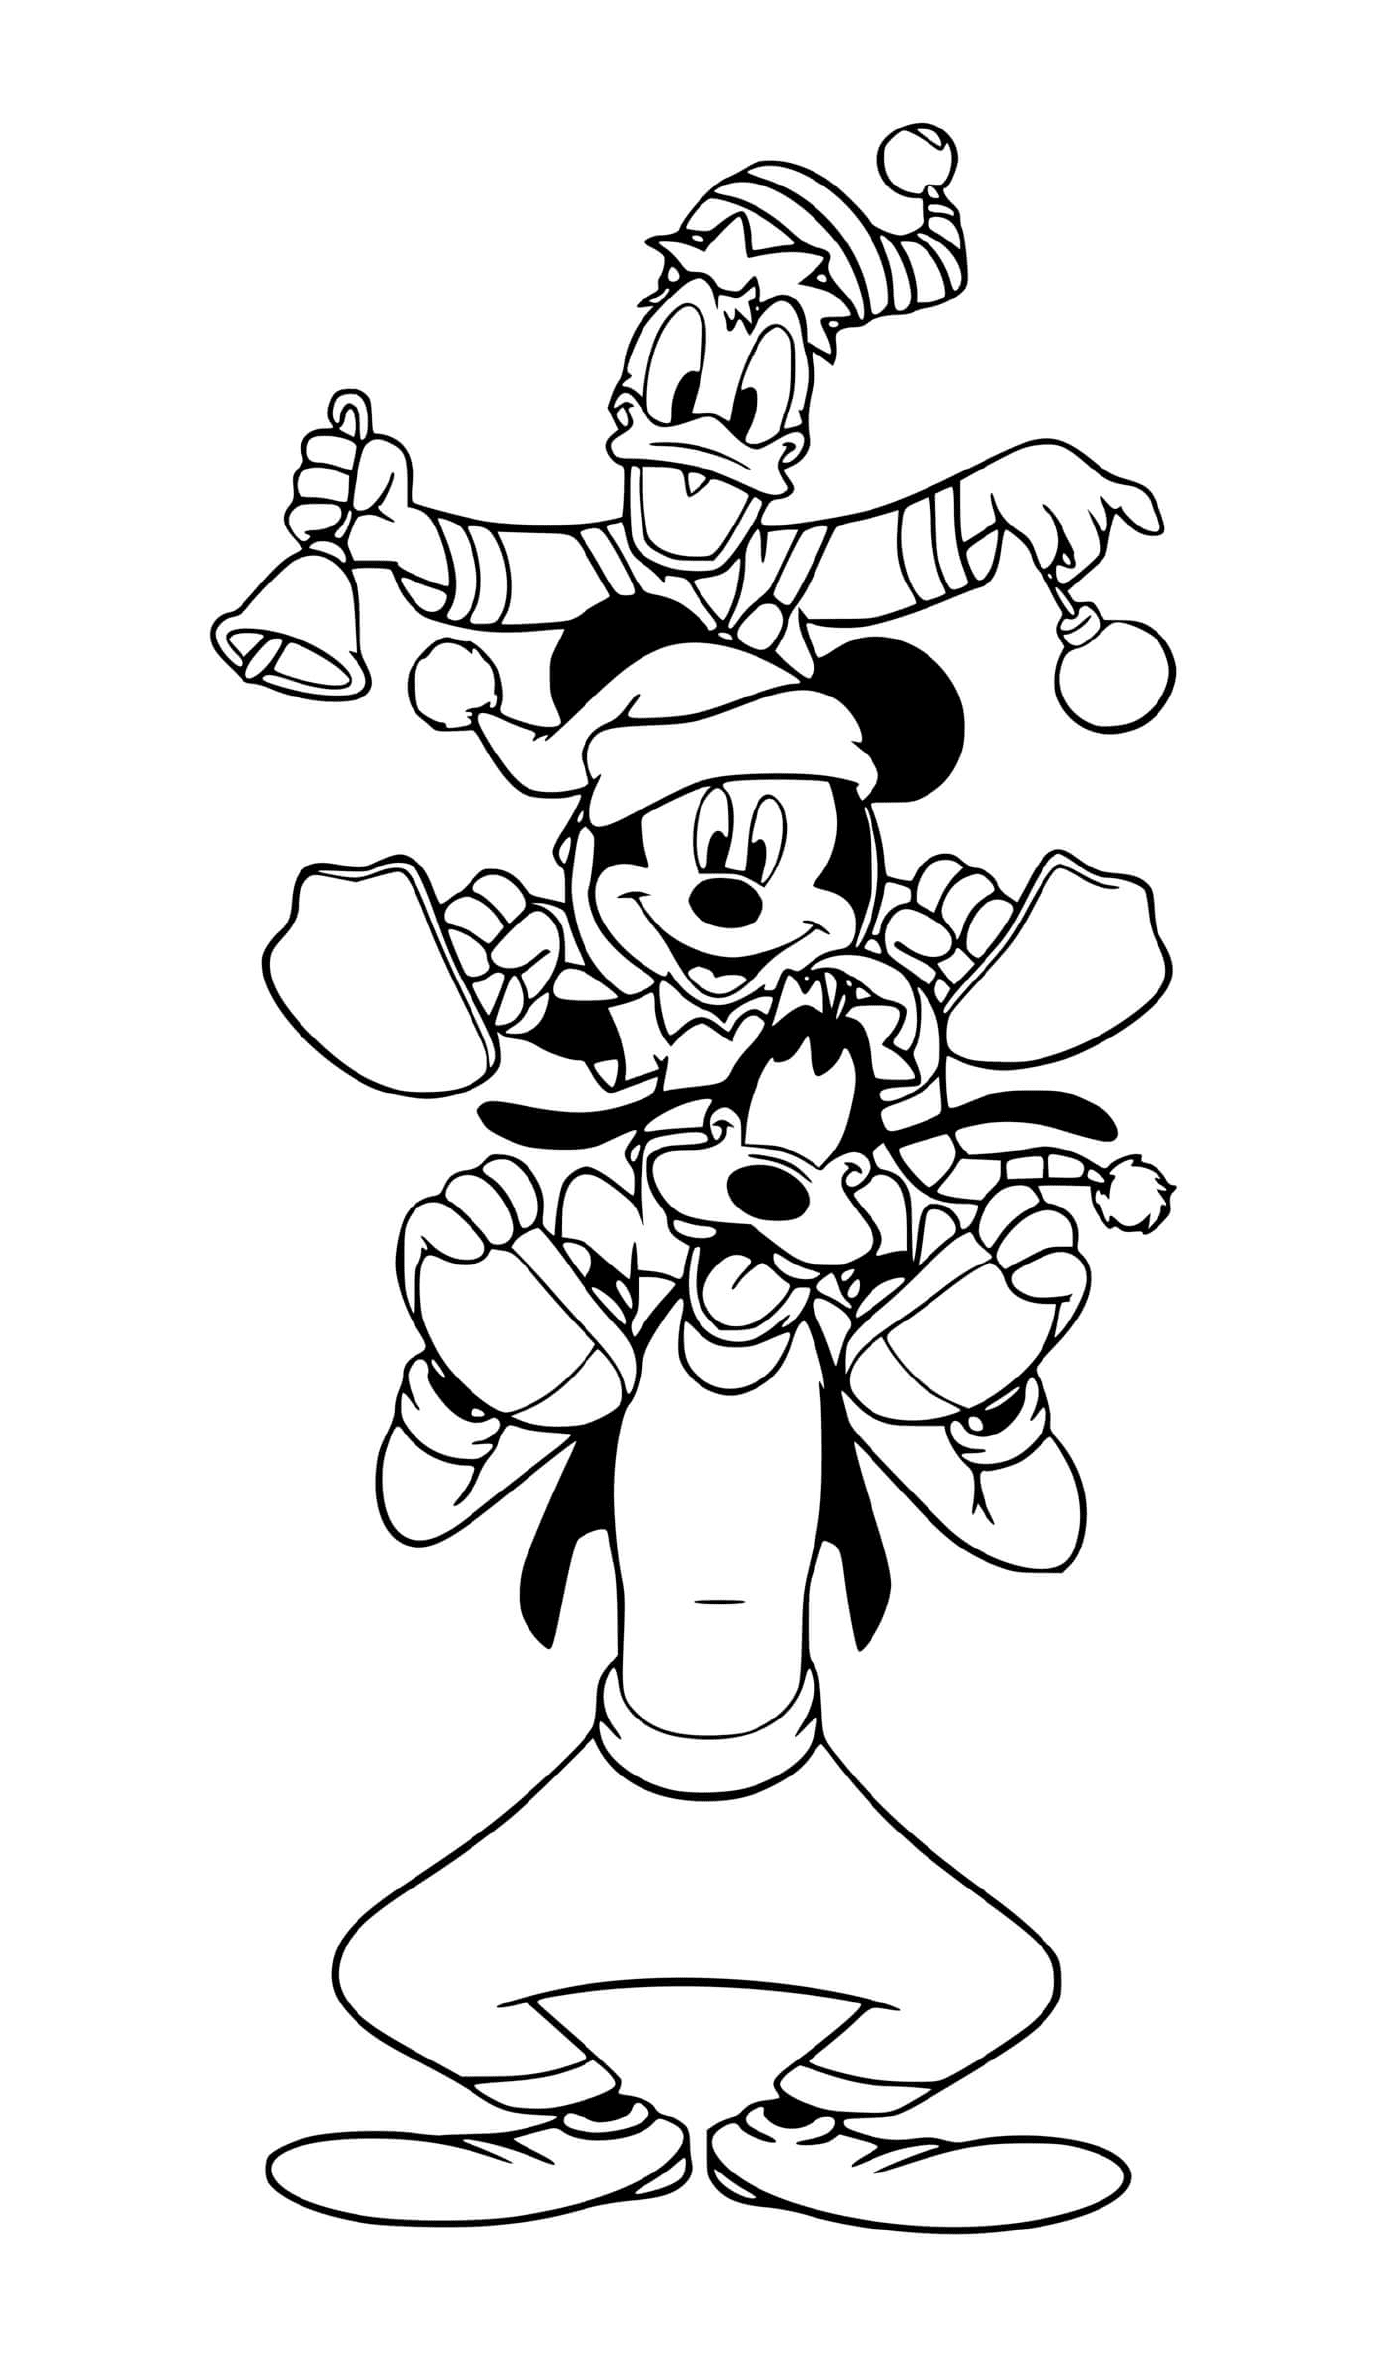  Mickey, Donald and Dingo on Christmas tour 